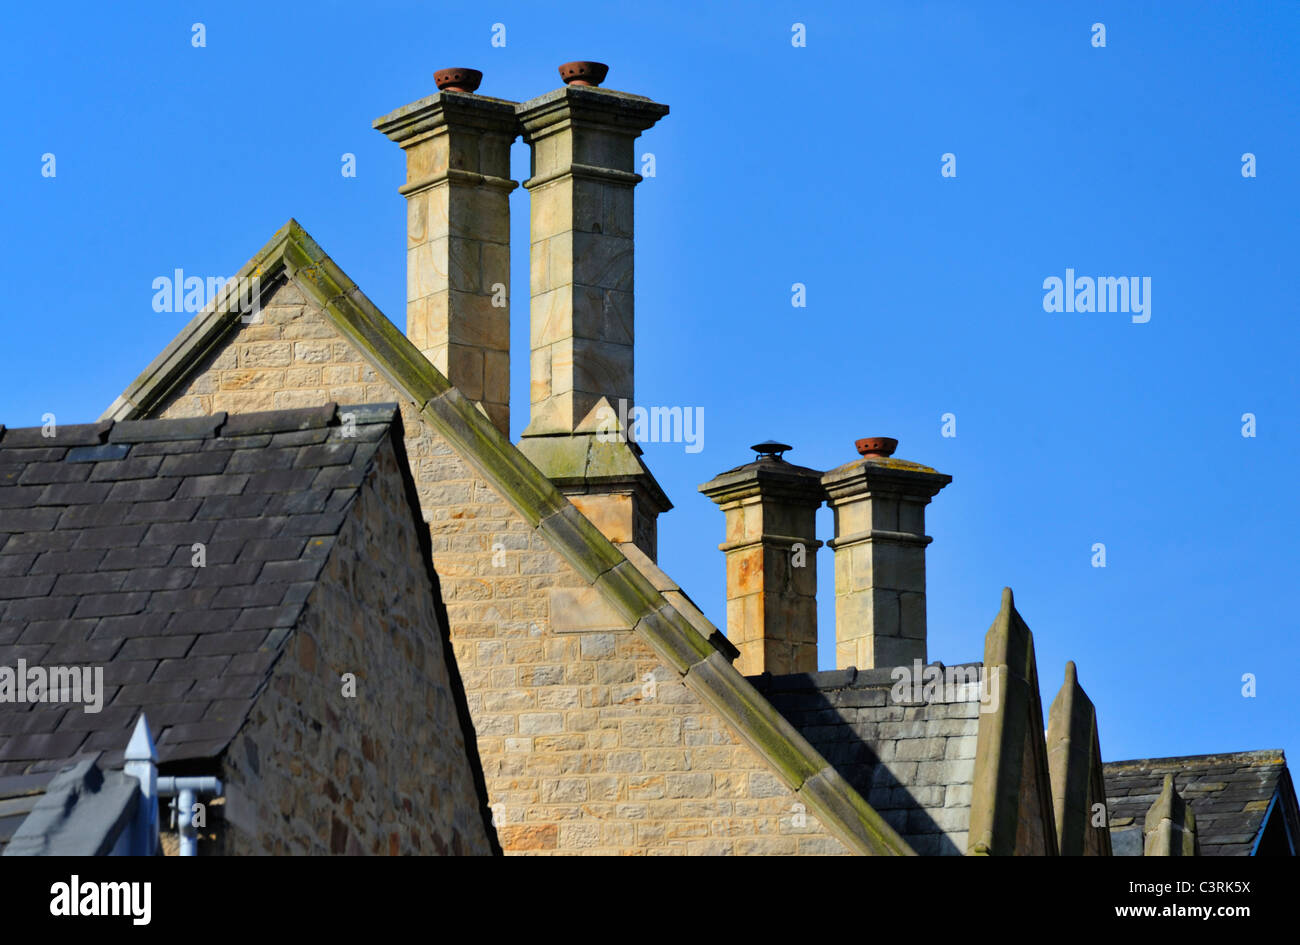 House chimney stacks, Lancaster, Lancashire, England, United Kingdom, Europe. Stock Photo